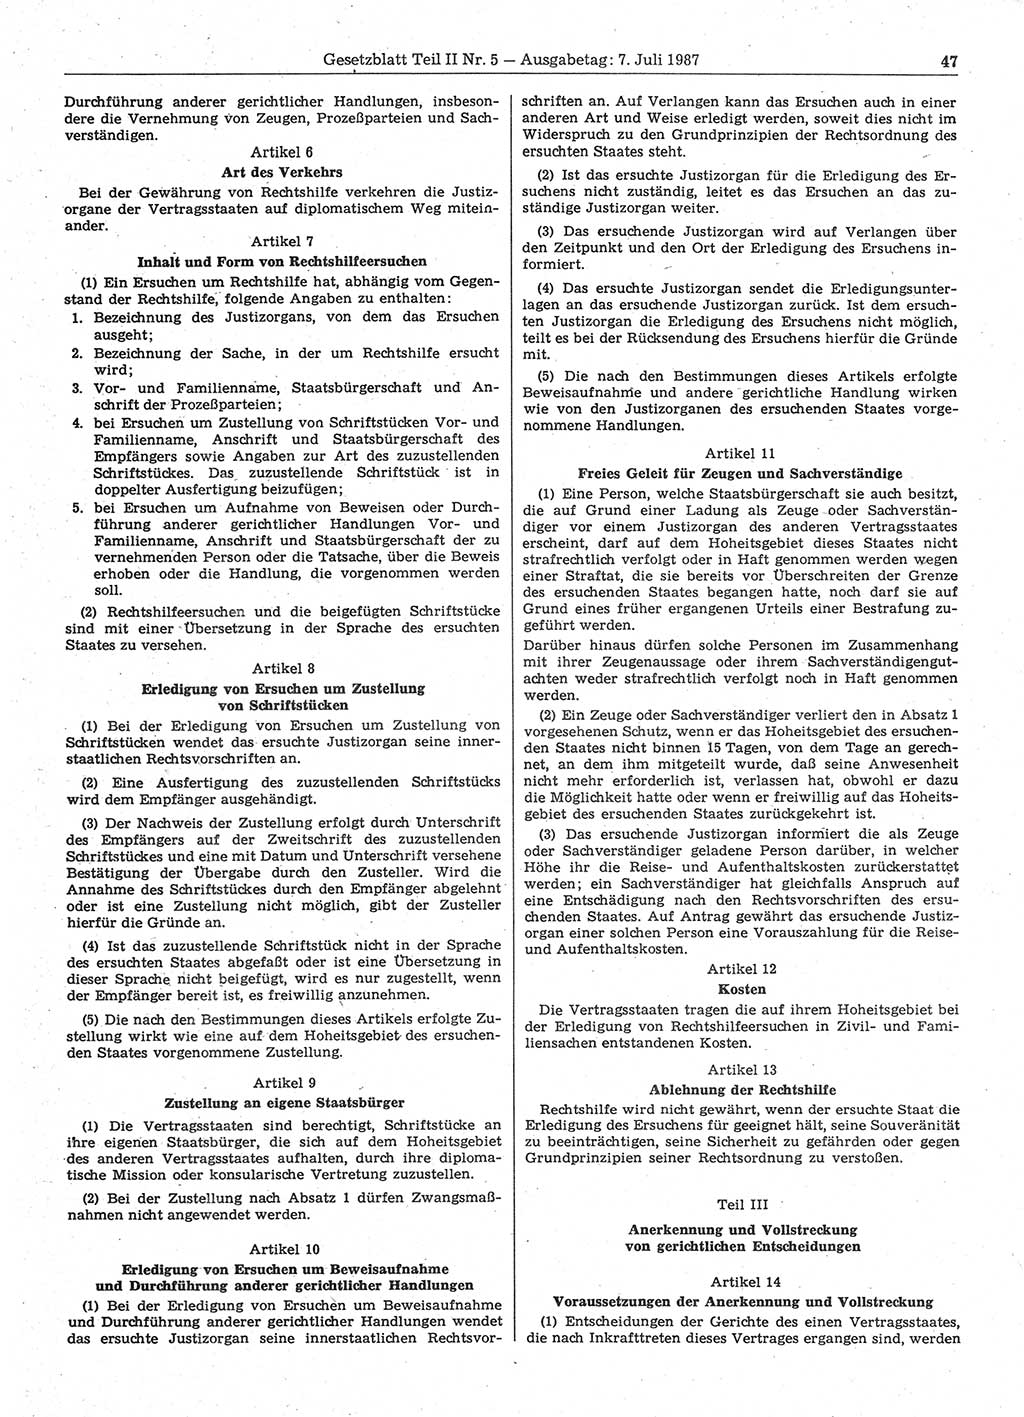 Gesetzblatt (GBl.) der Deutschen Demokratischen Republik (DDR) Teil ⅠⅠ 1987, Seite 47 (GBl. DDR ⅠⅠ 1987, S. 47)